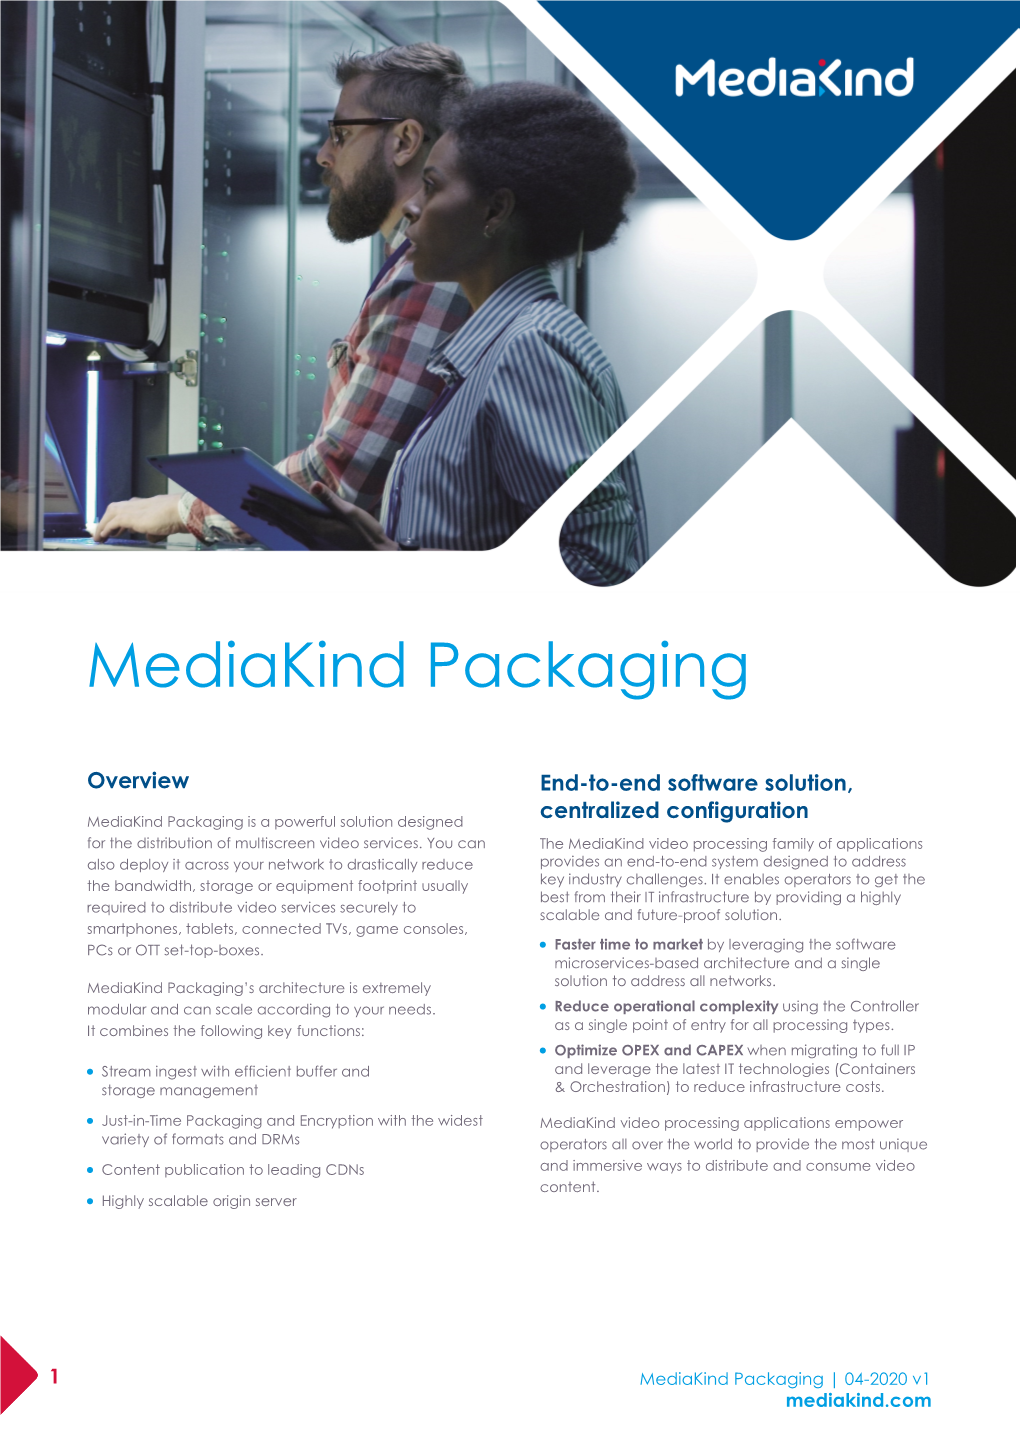 Mediakind Packaging